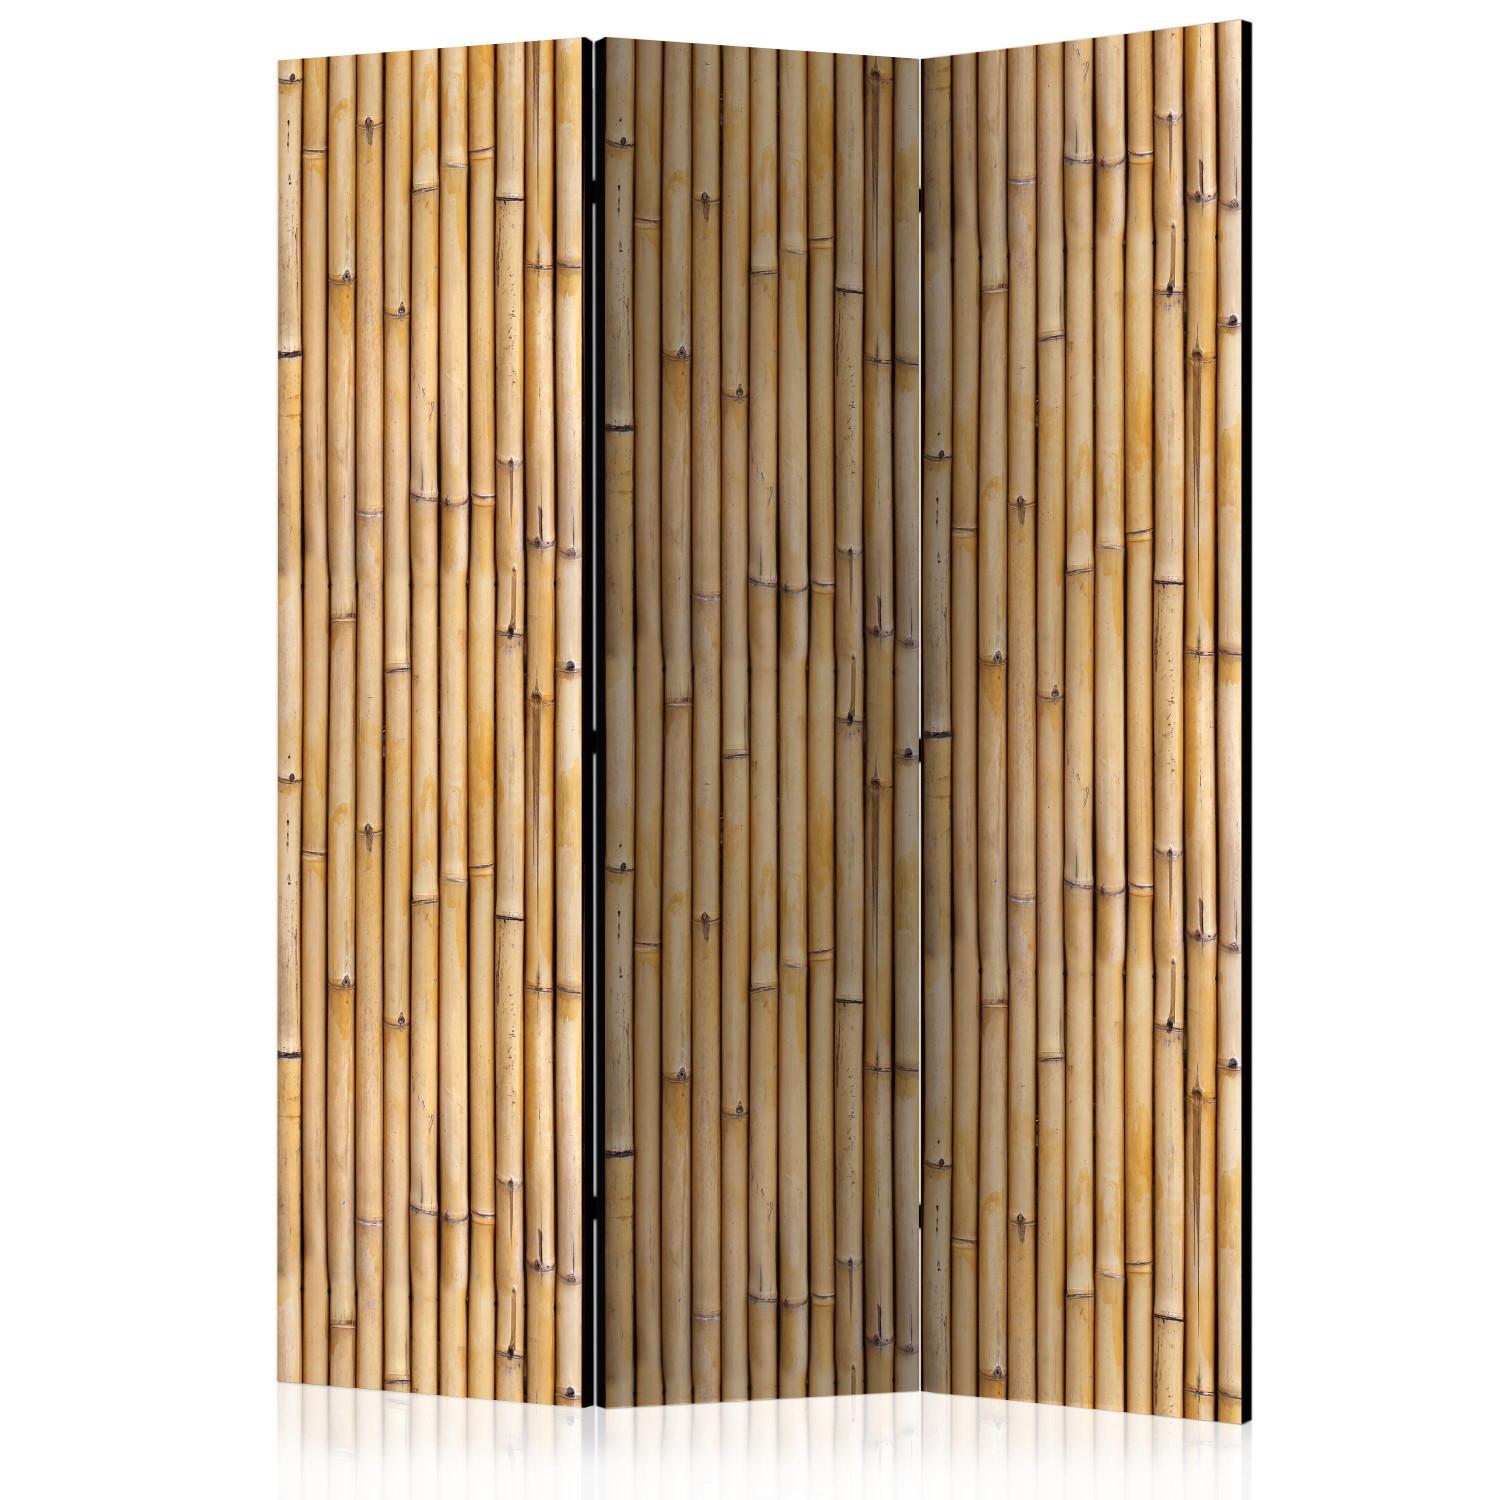 Biombo barato Muro amazónico (3 partes) - patrón marrón con motivos vegetales